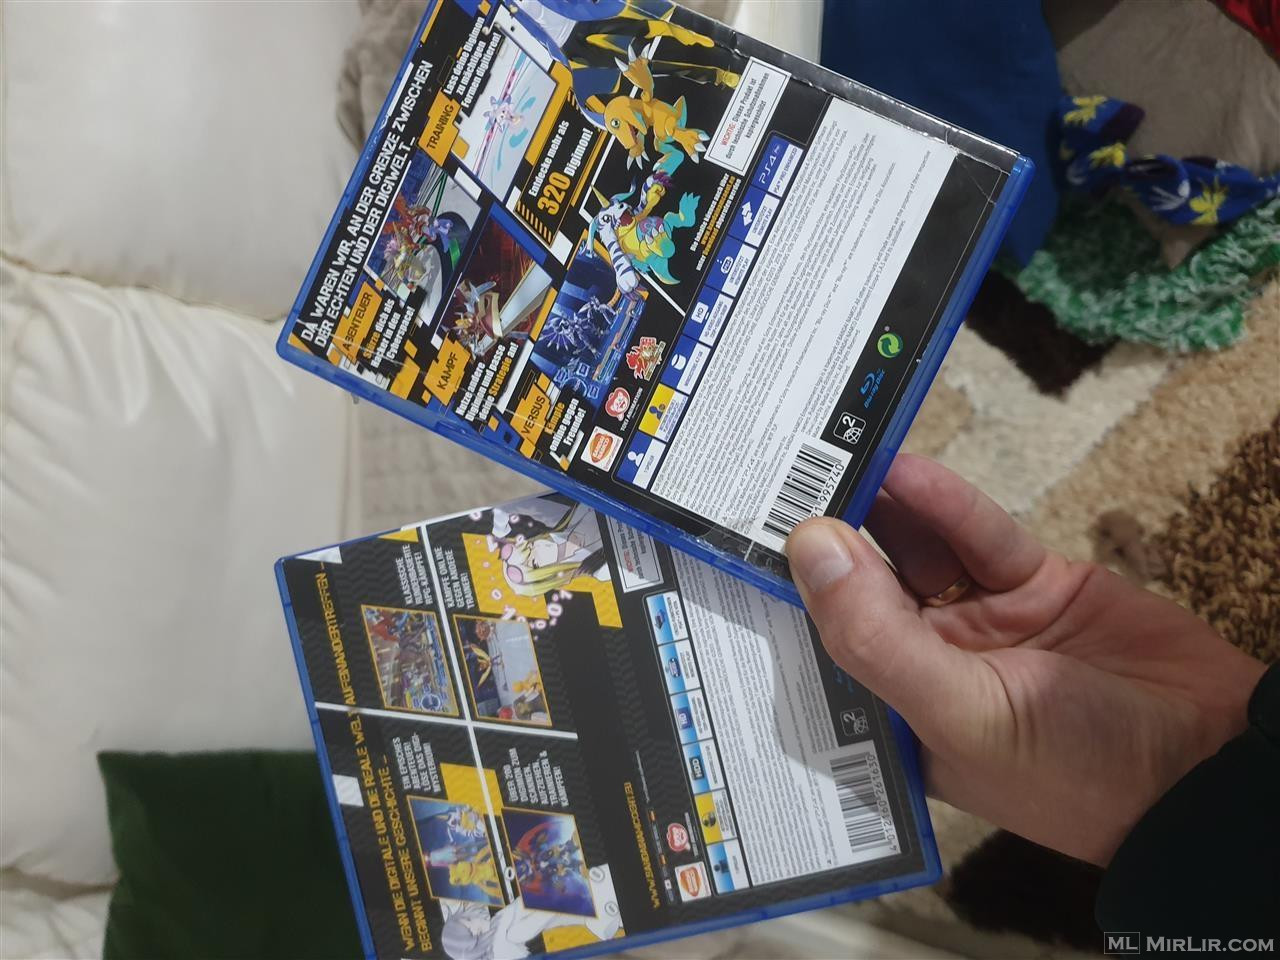 Shiten 2 superlojrat Digimon per PS4